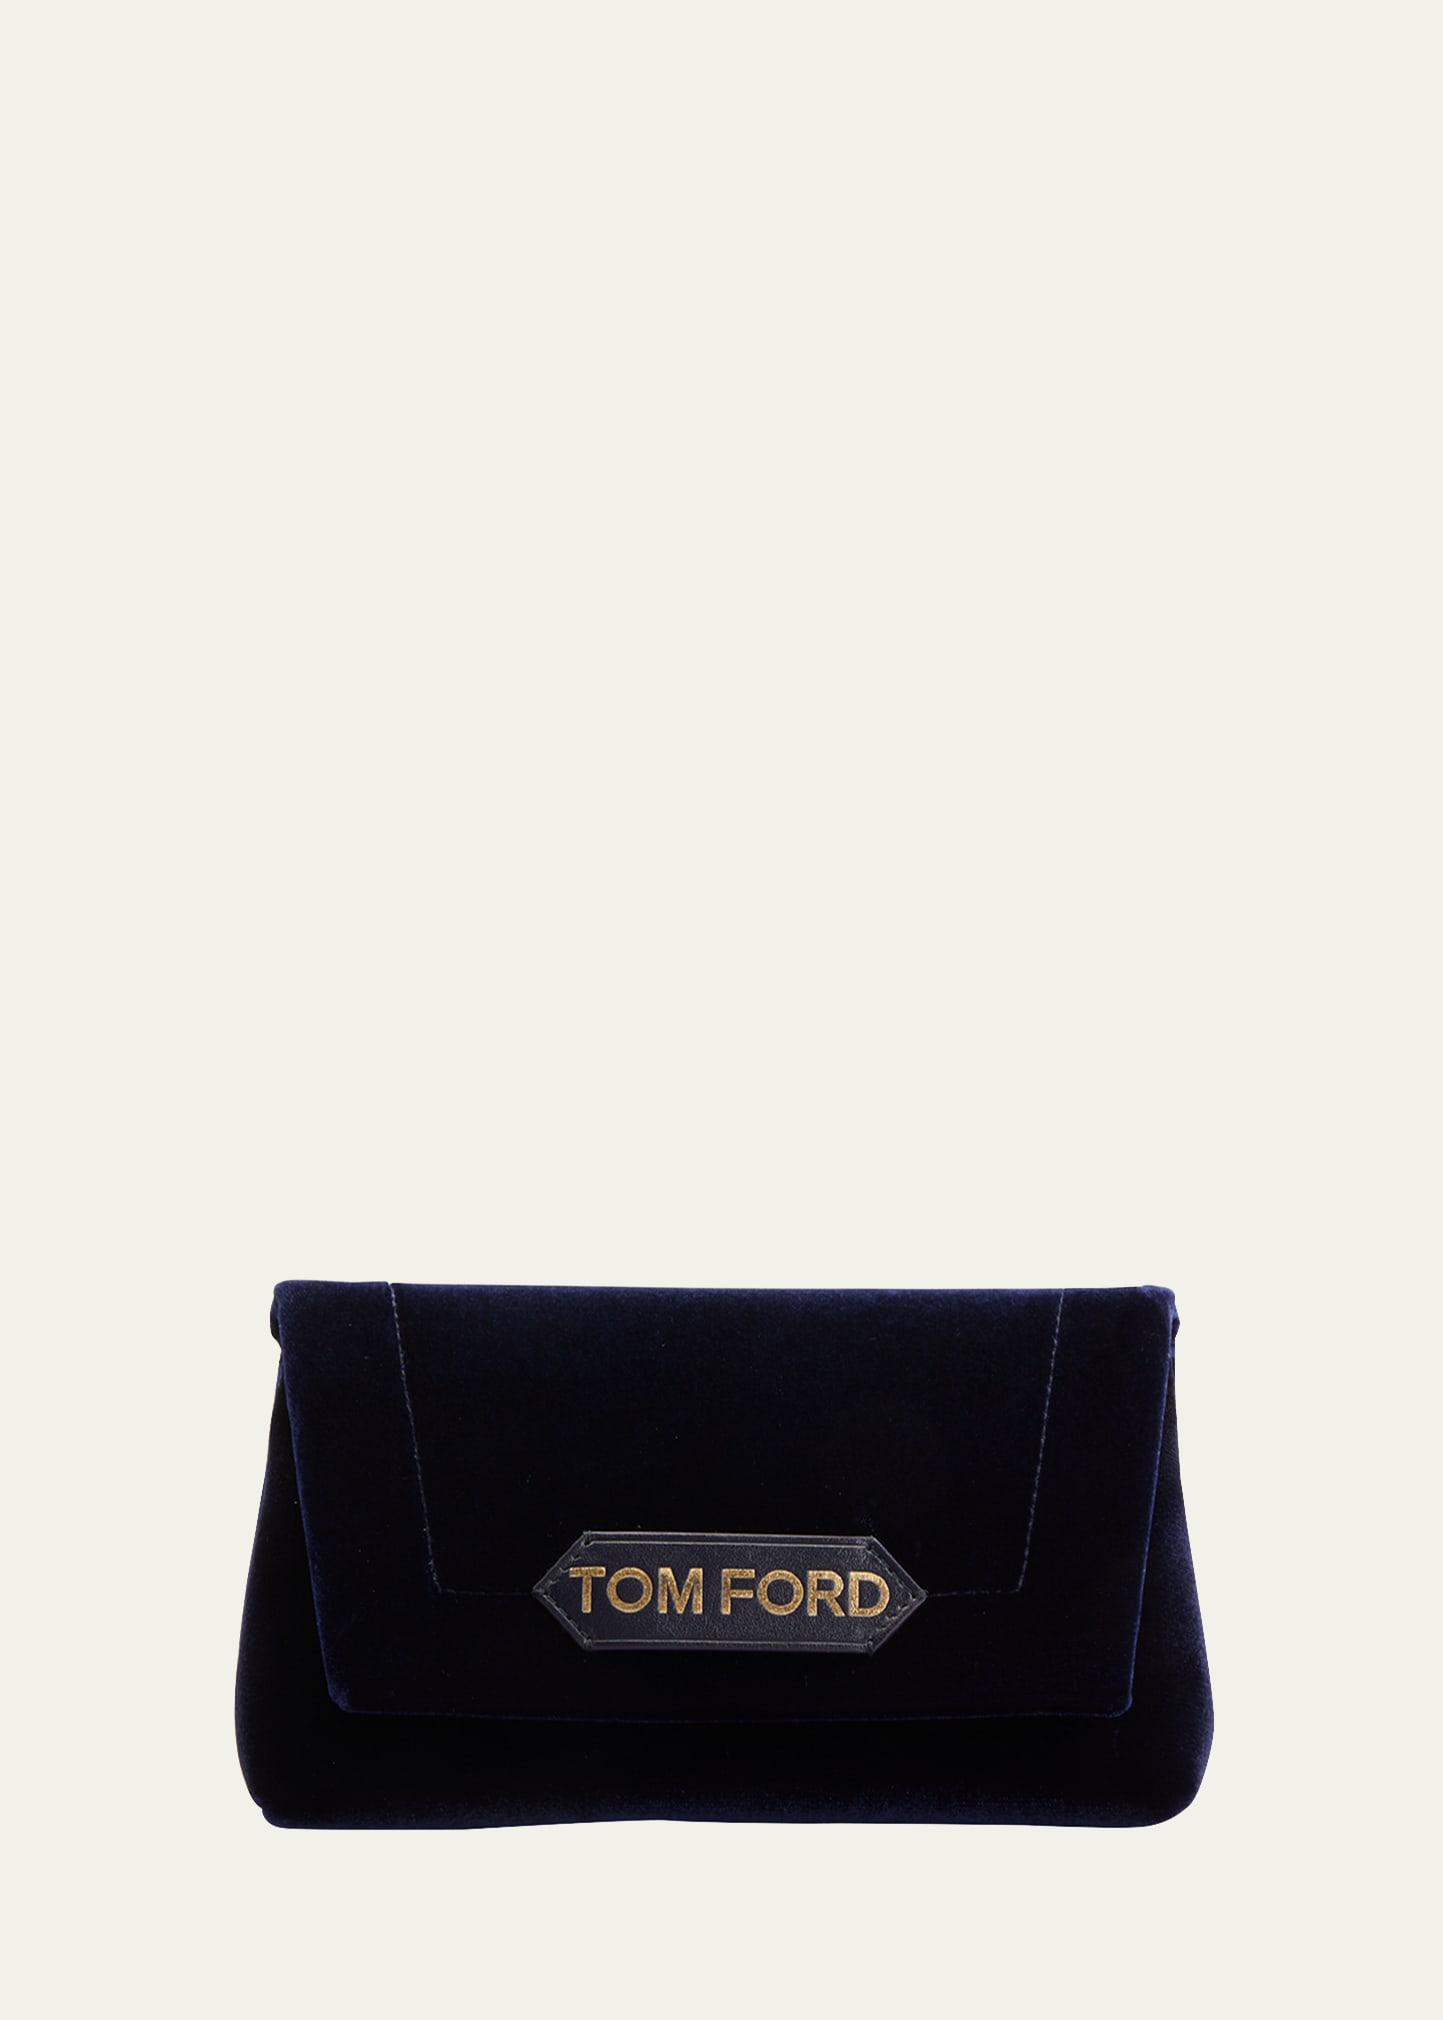 TOM FORD Natalia Velvet Chain Shoulder Bag - Bergdorf Goodman